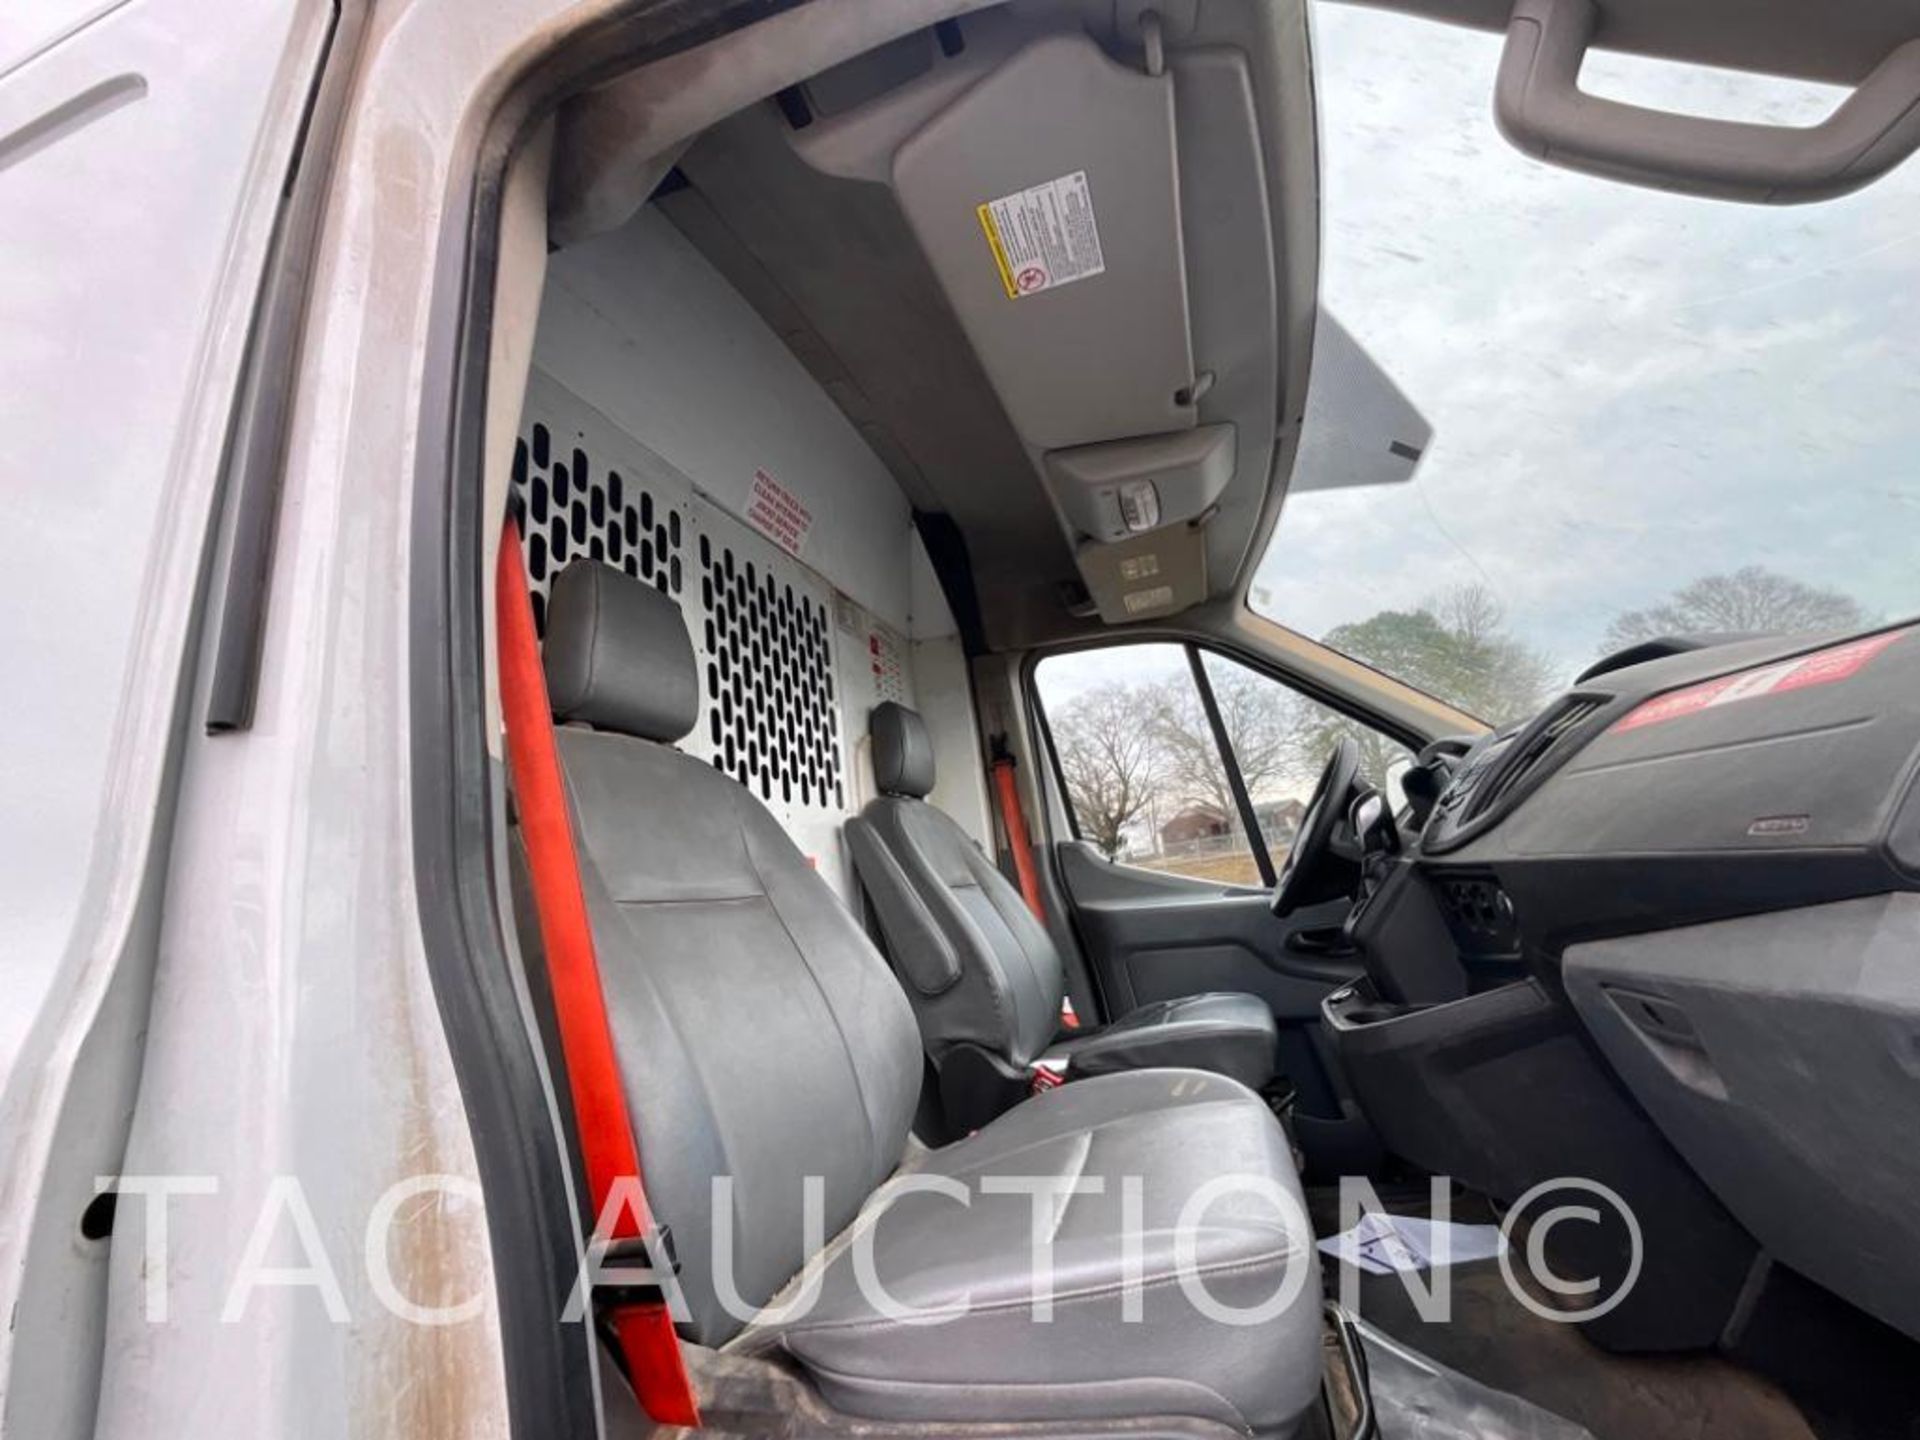 2019 Ford Transit 150 Cargo Van - Image 12 of 33